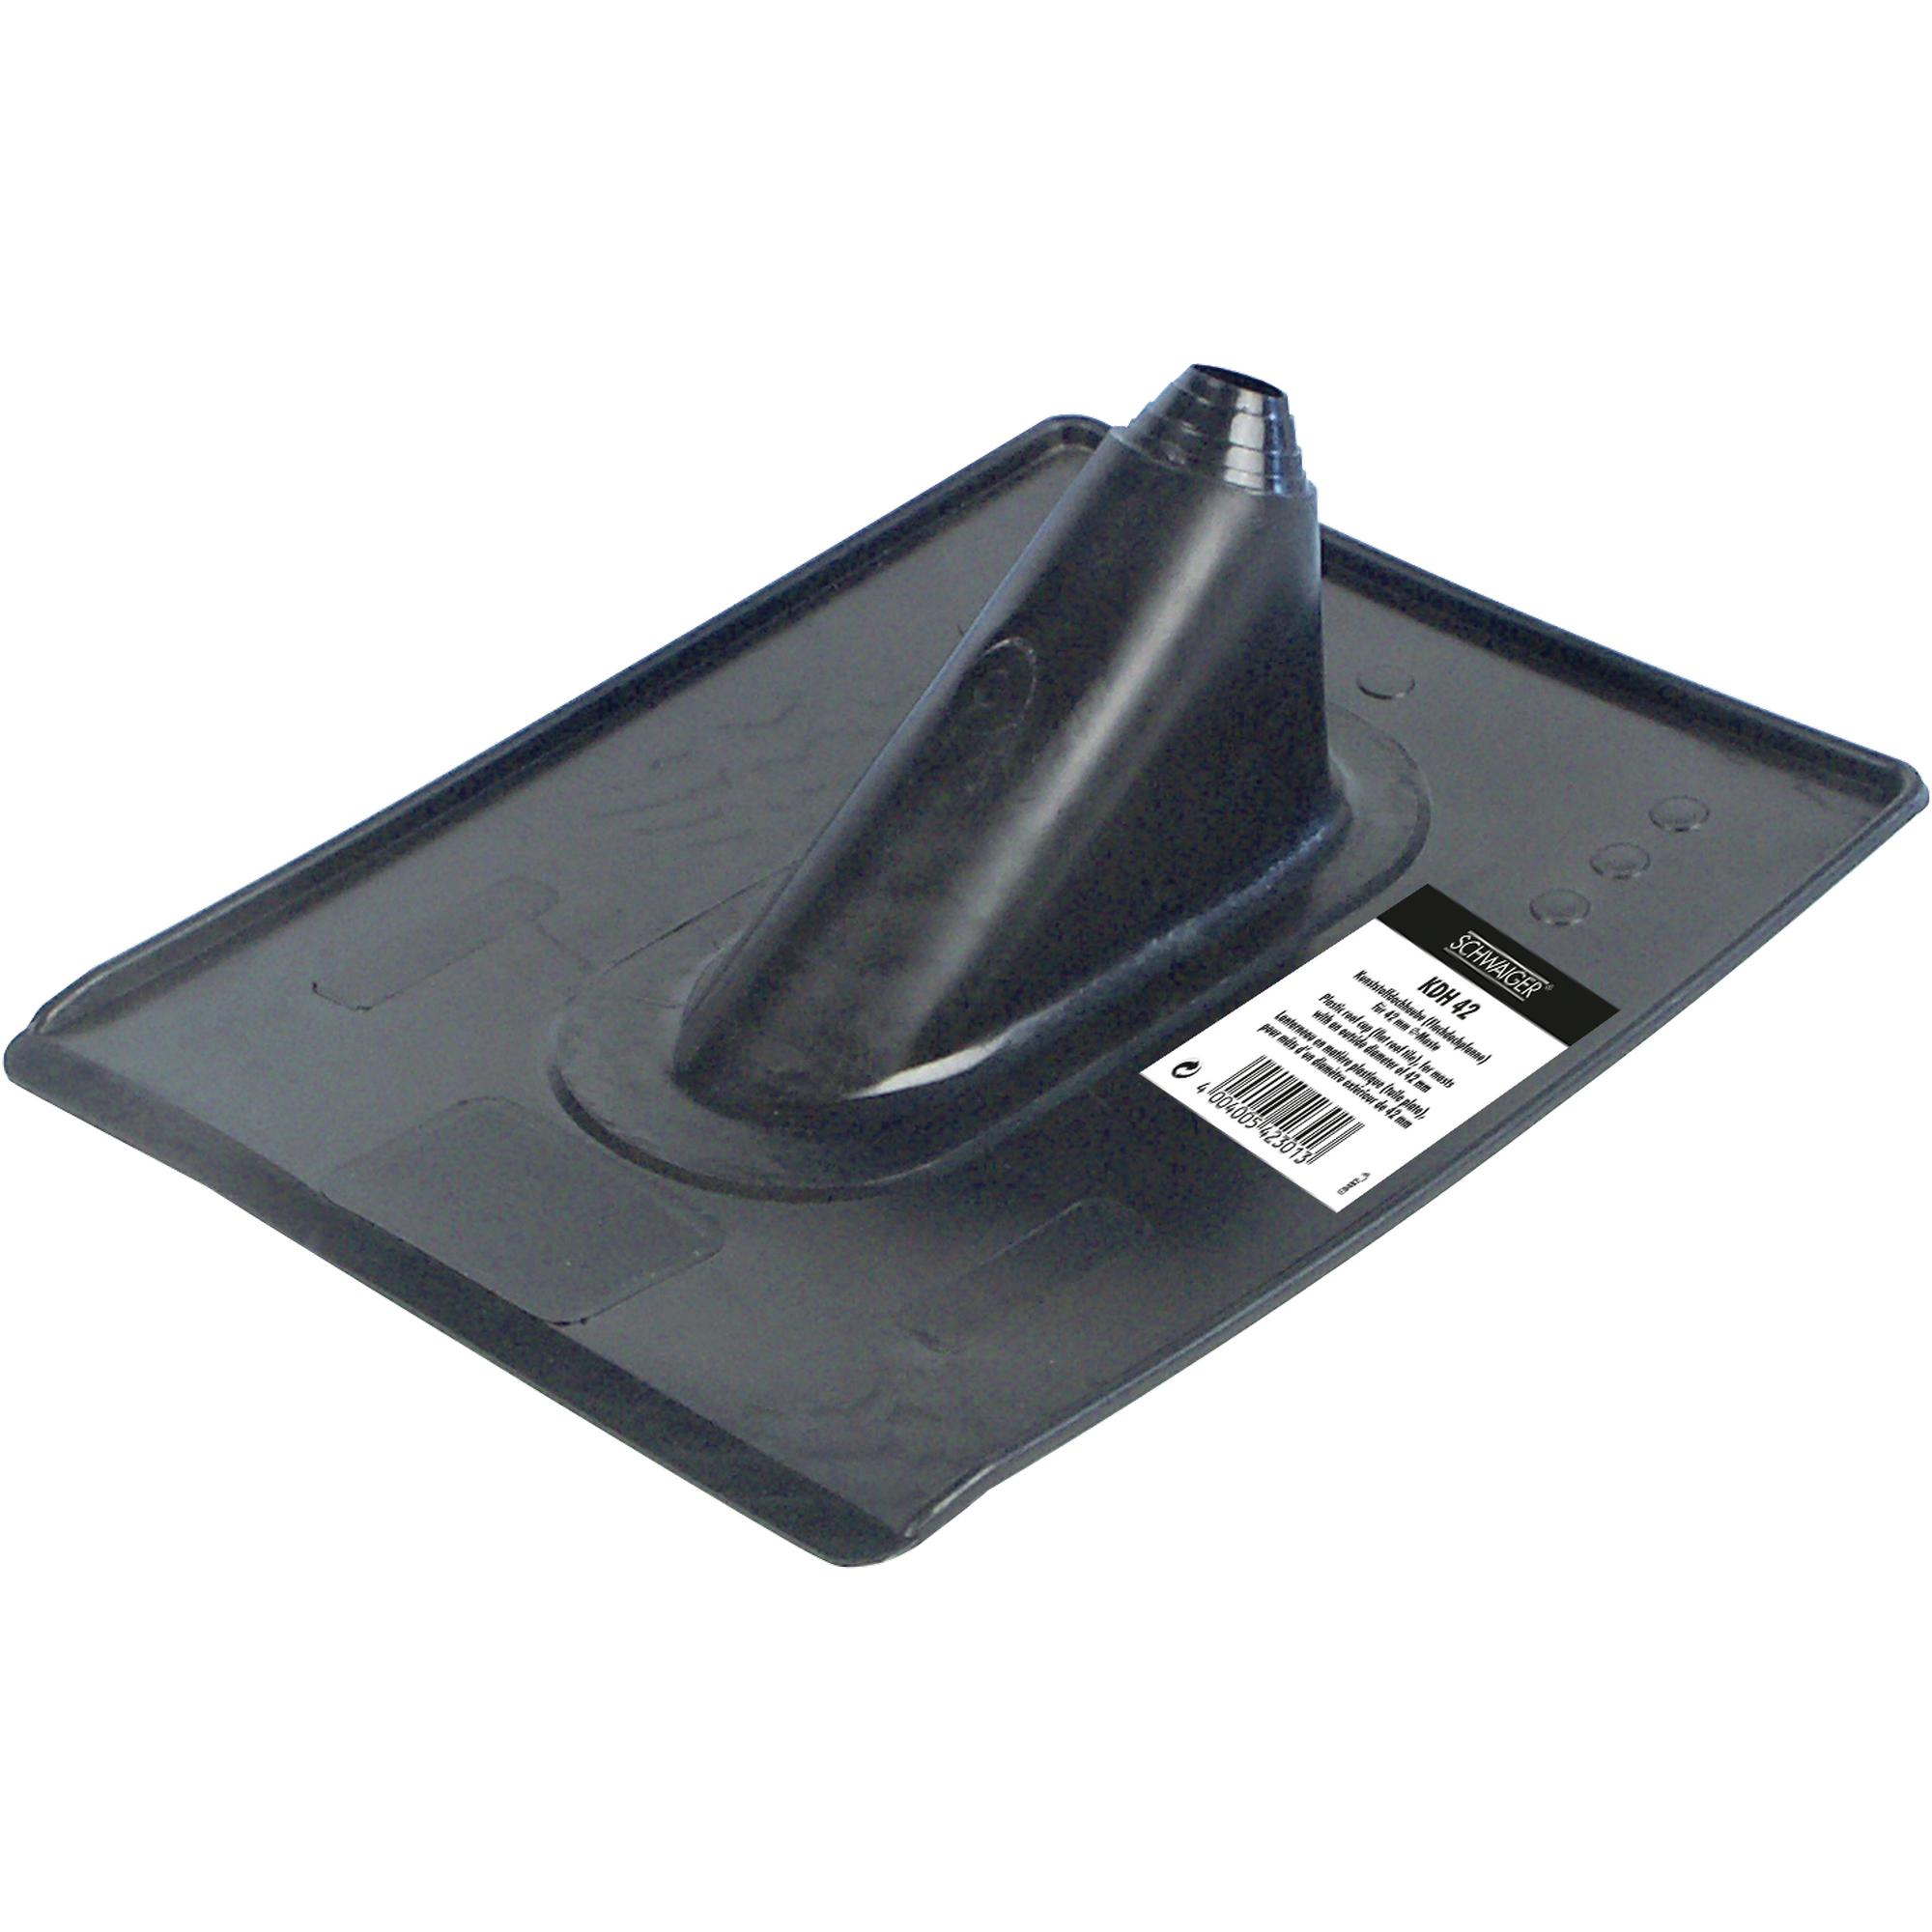 Kunststoff-Dachhaube schwarz für Masten bis Ø 60 mm + product picture